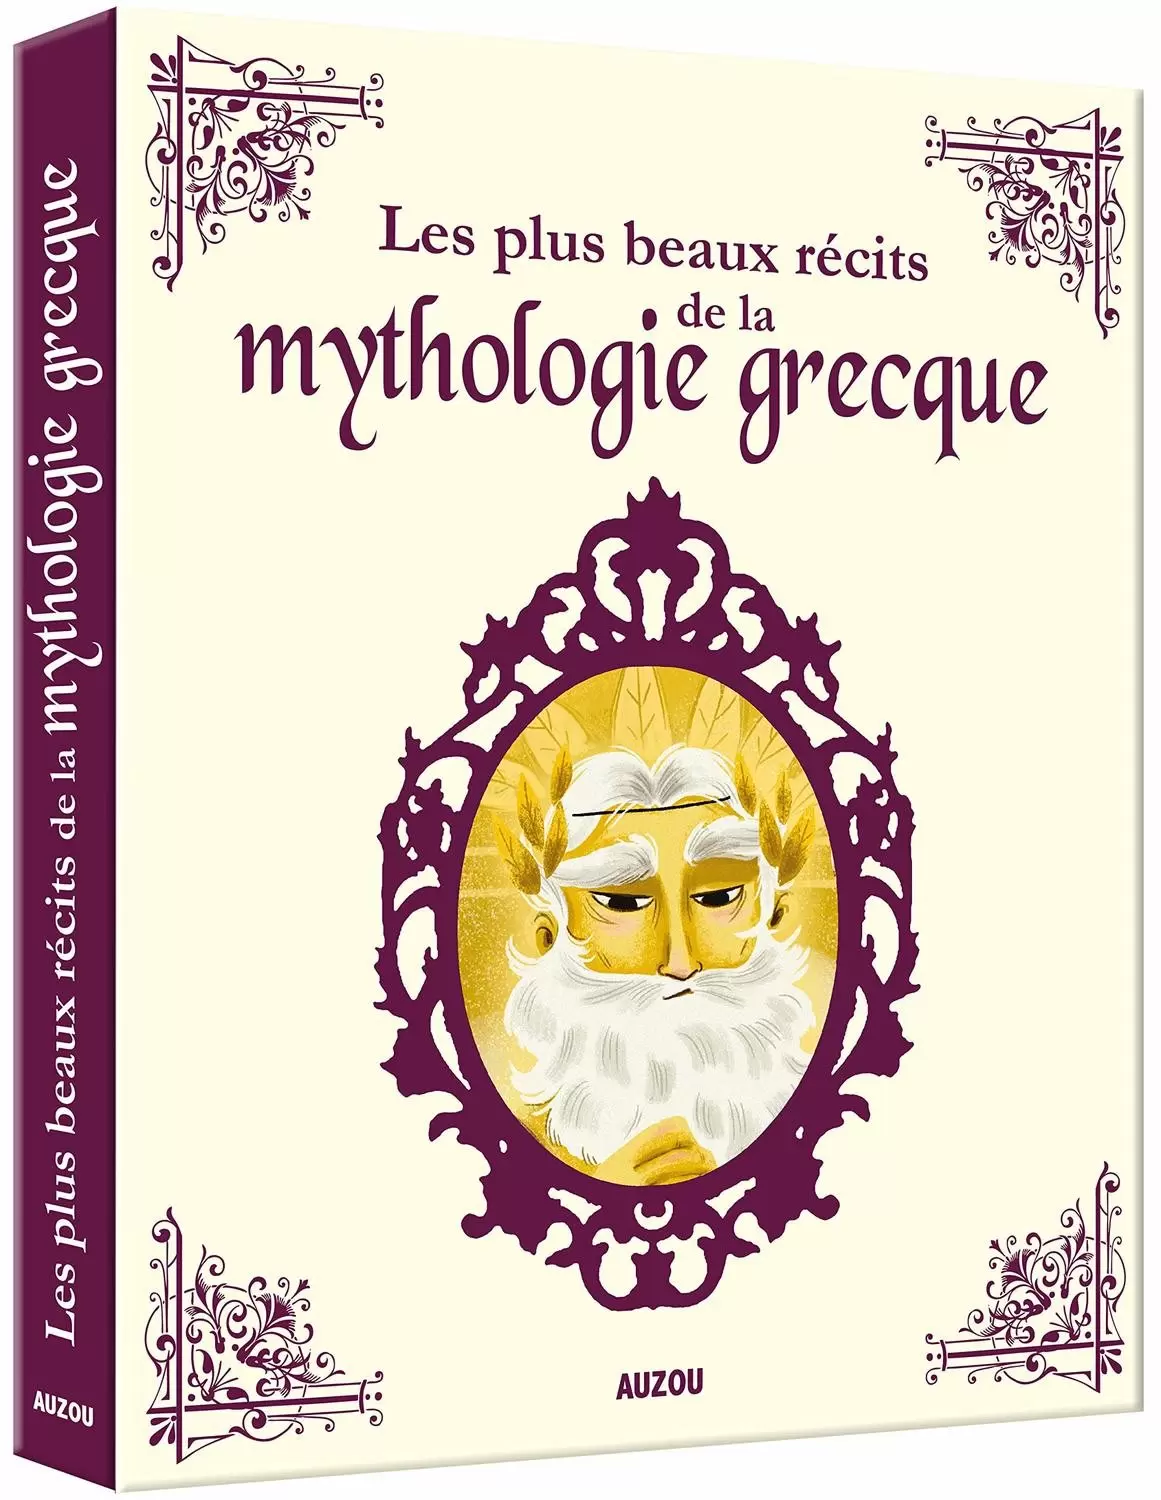 Les Plus Beaux Contes - Les plus beaux récits de la mythologie grecque